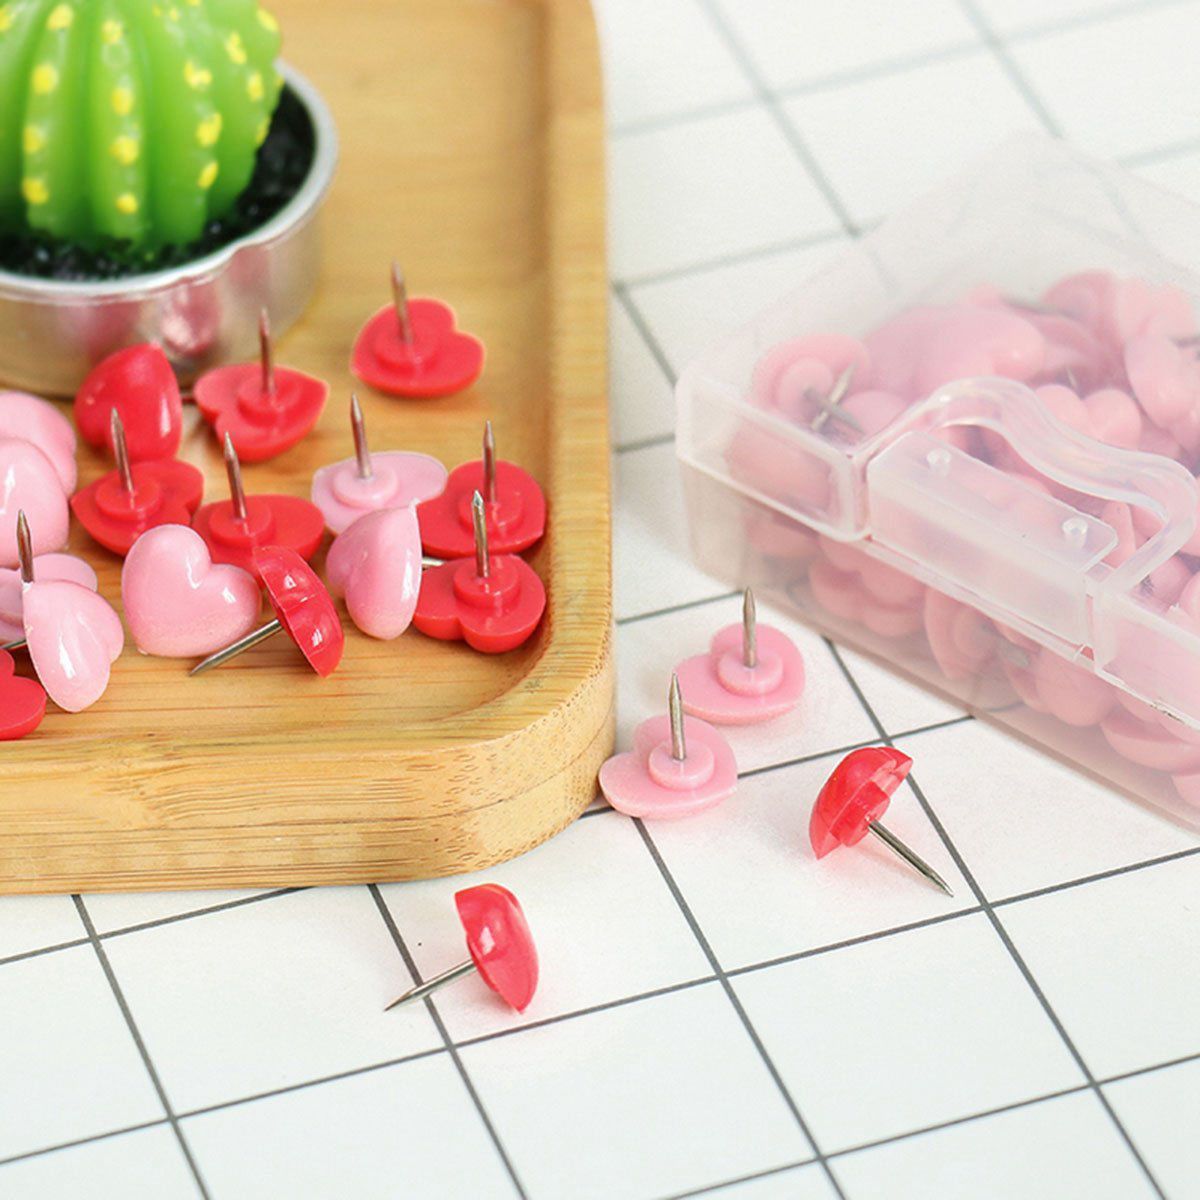 50 PCS Heart Push Pins, Red Bulletin Boards Thumb Tacks, Pink Cute Wall Tacks Decorative for Cork Board Home and Office